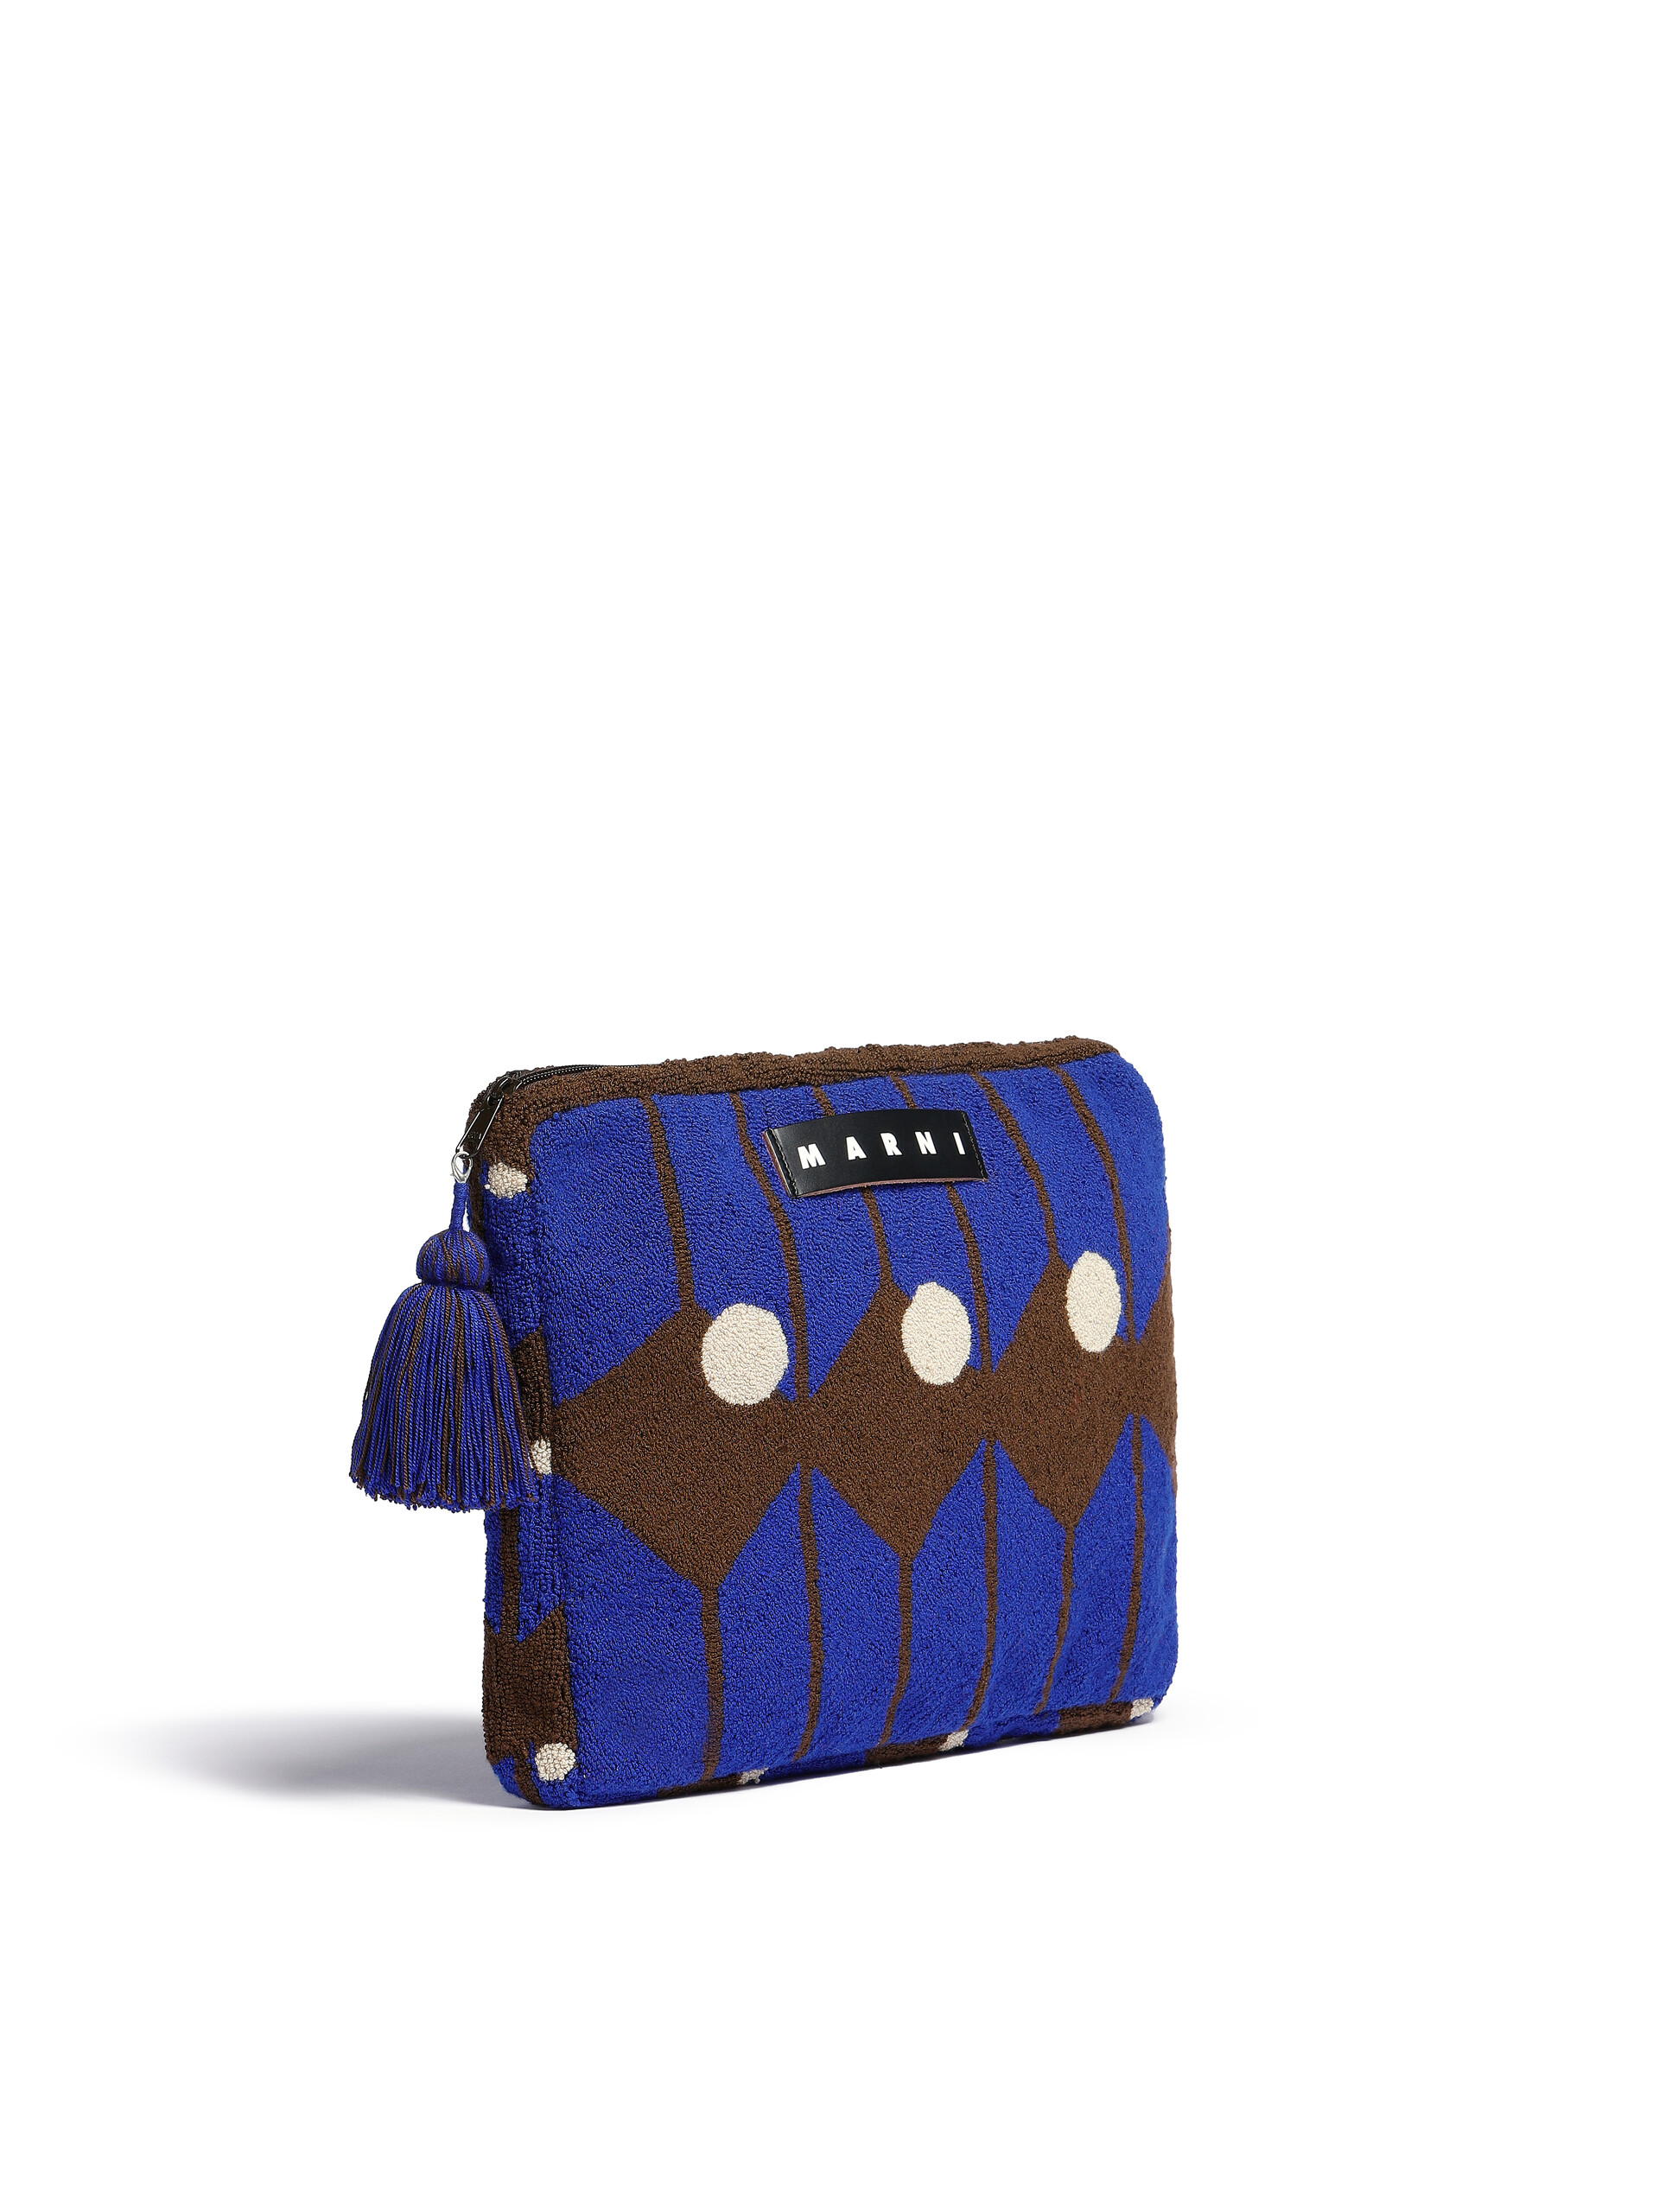 Housse pour ordinateur portable Marni Market bleue et marron en laine - Accessoires - Image 2